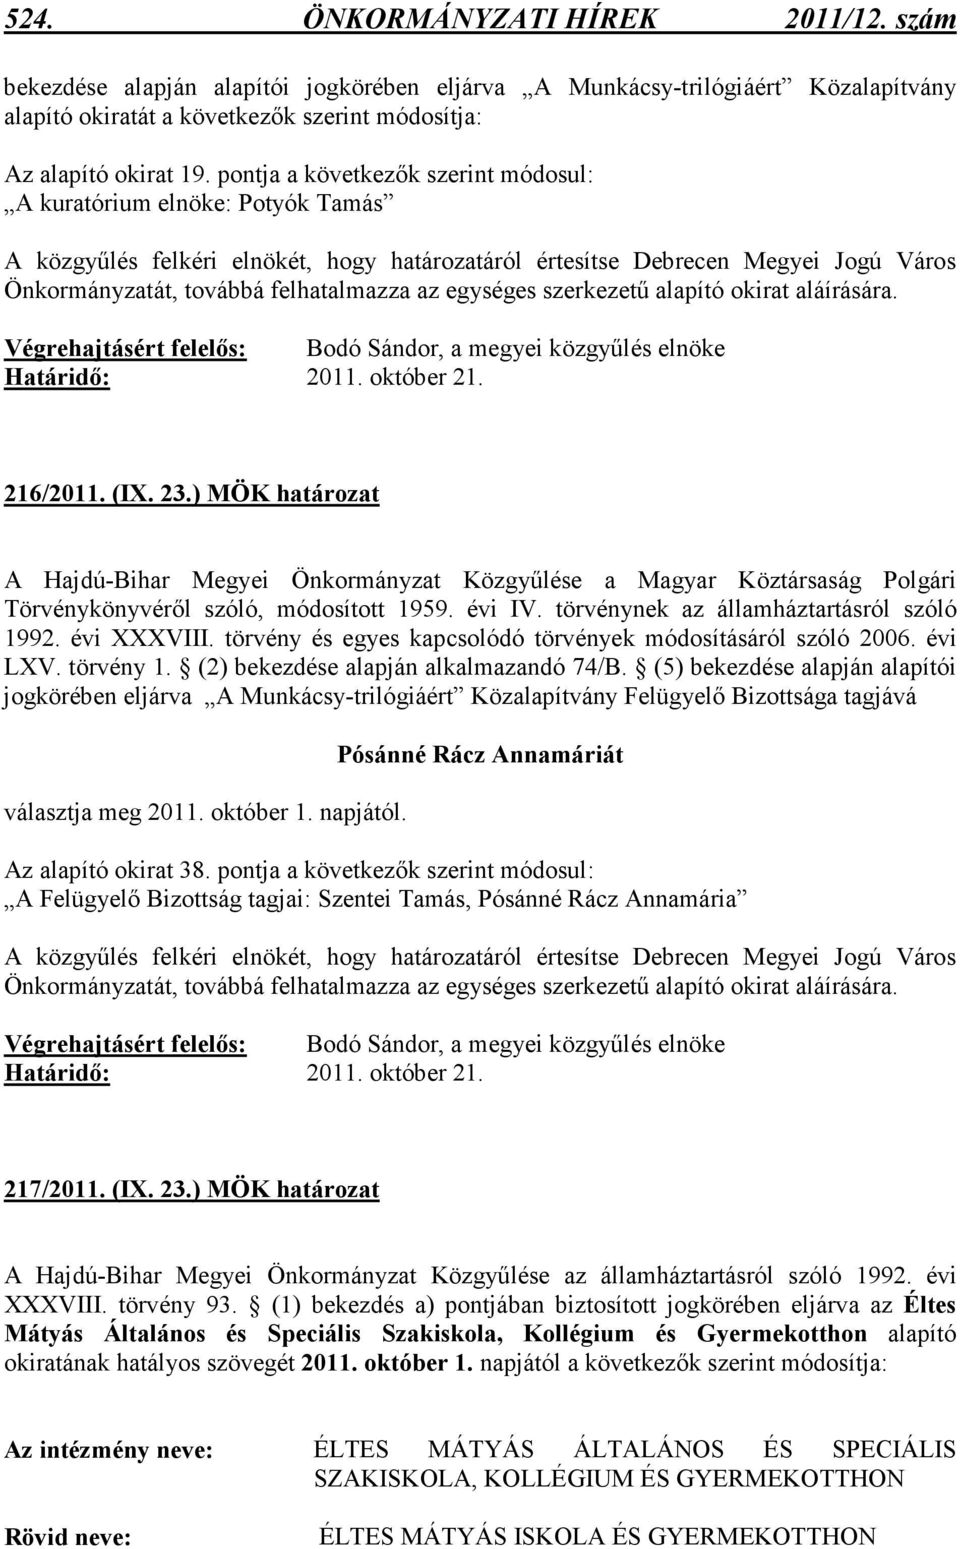 egységes szerkezető alapító okirat aláírására. Határidı: 2011. október 21. 216/2011. (IX. 23.